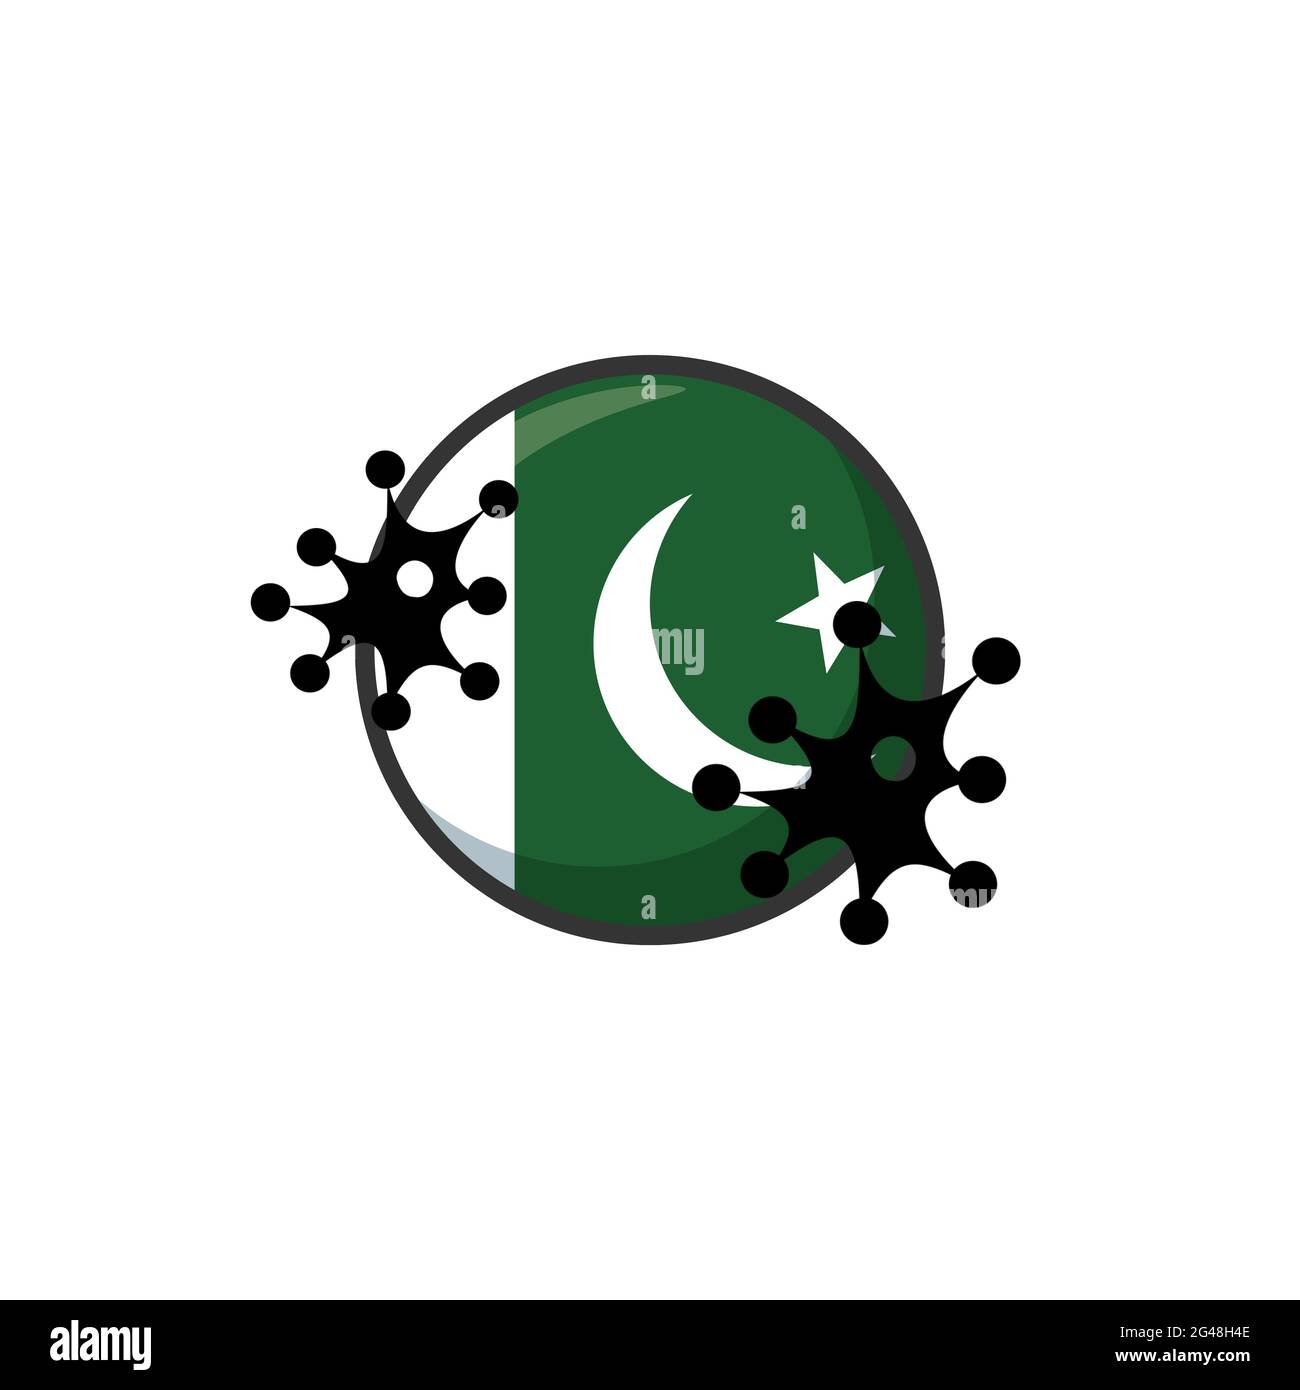 Pakistan frappé par le coronavirus. Covid-19 impact national. Attaque de virus sur le drapeau du Pakistan illustration du concept sur fond blanc Banque D'Images